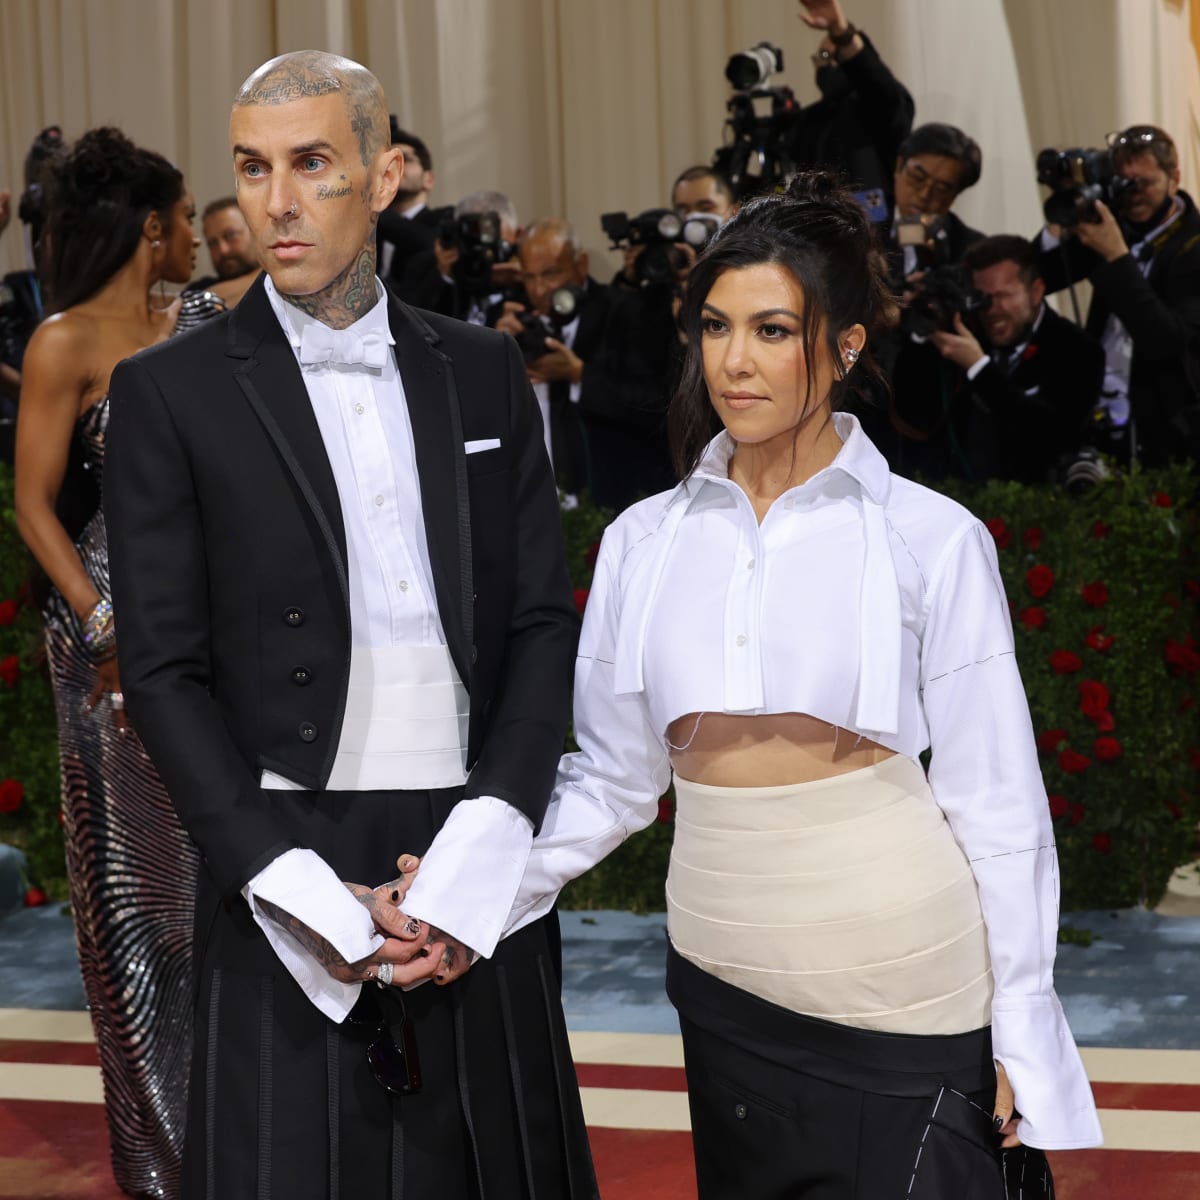 Kourtney Kardashian Shares Inspiration Behind Dolce & Gabbana Wedding Dress